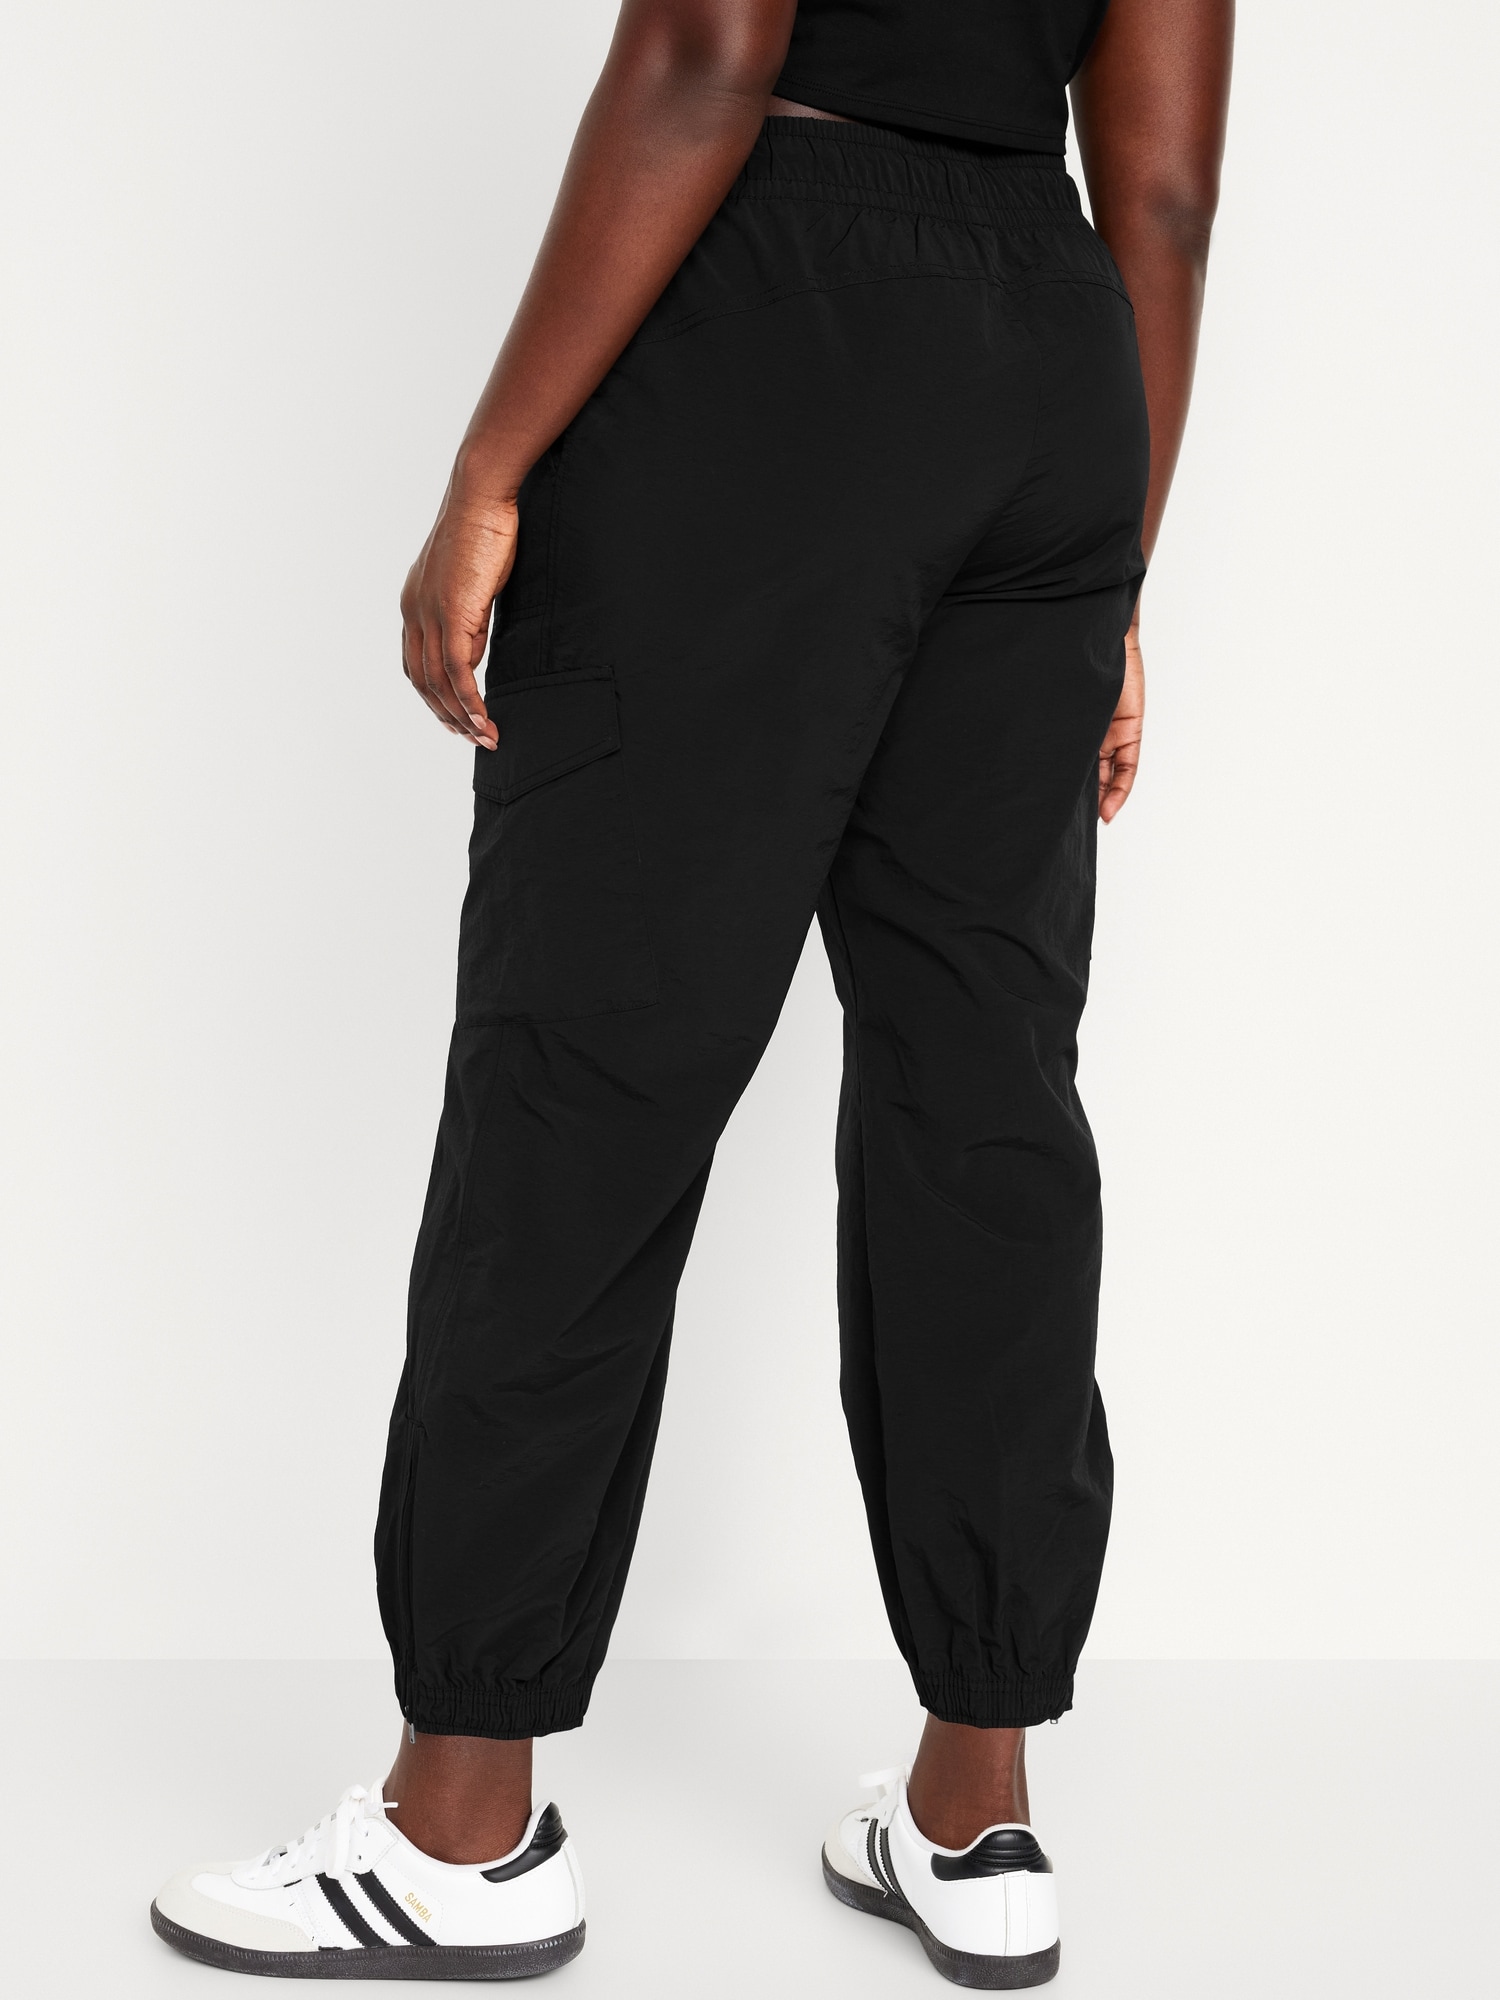 Pantalon De Jogging Cargo Taille Haute Pour Femme, Poches Zippées